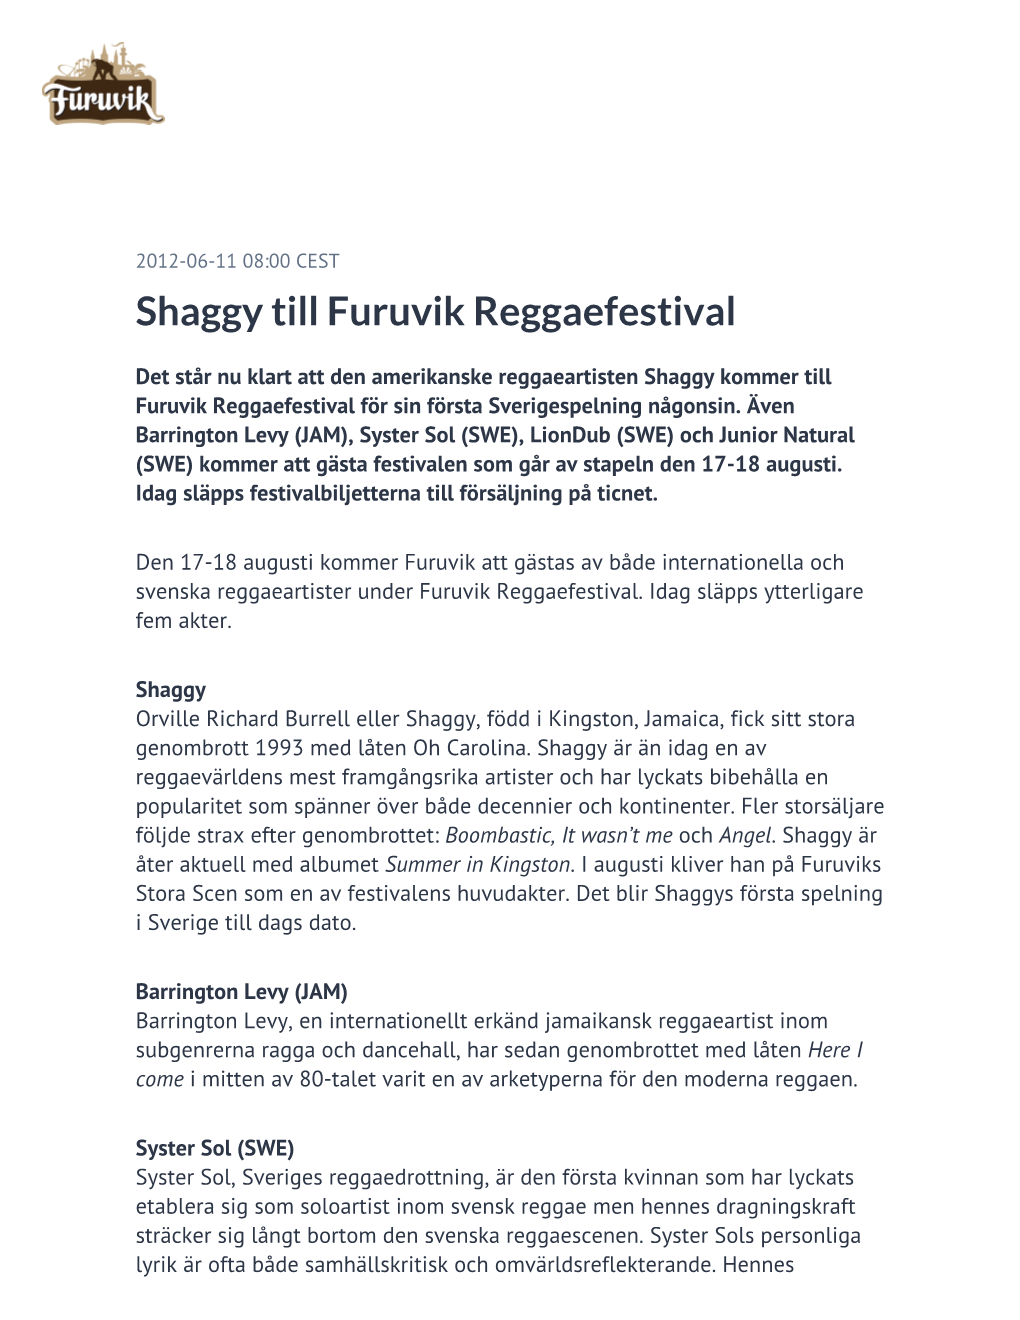 Shaggy Till Furuvik Reggaefestival